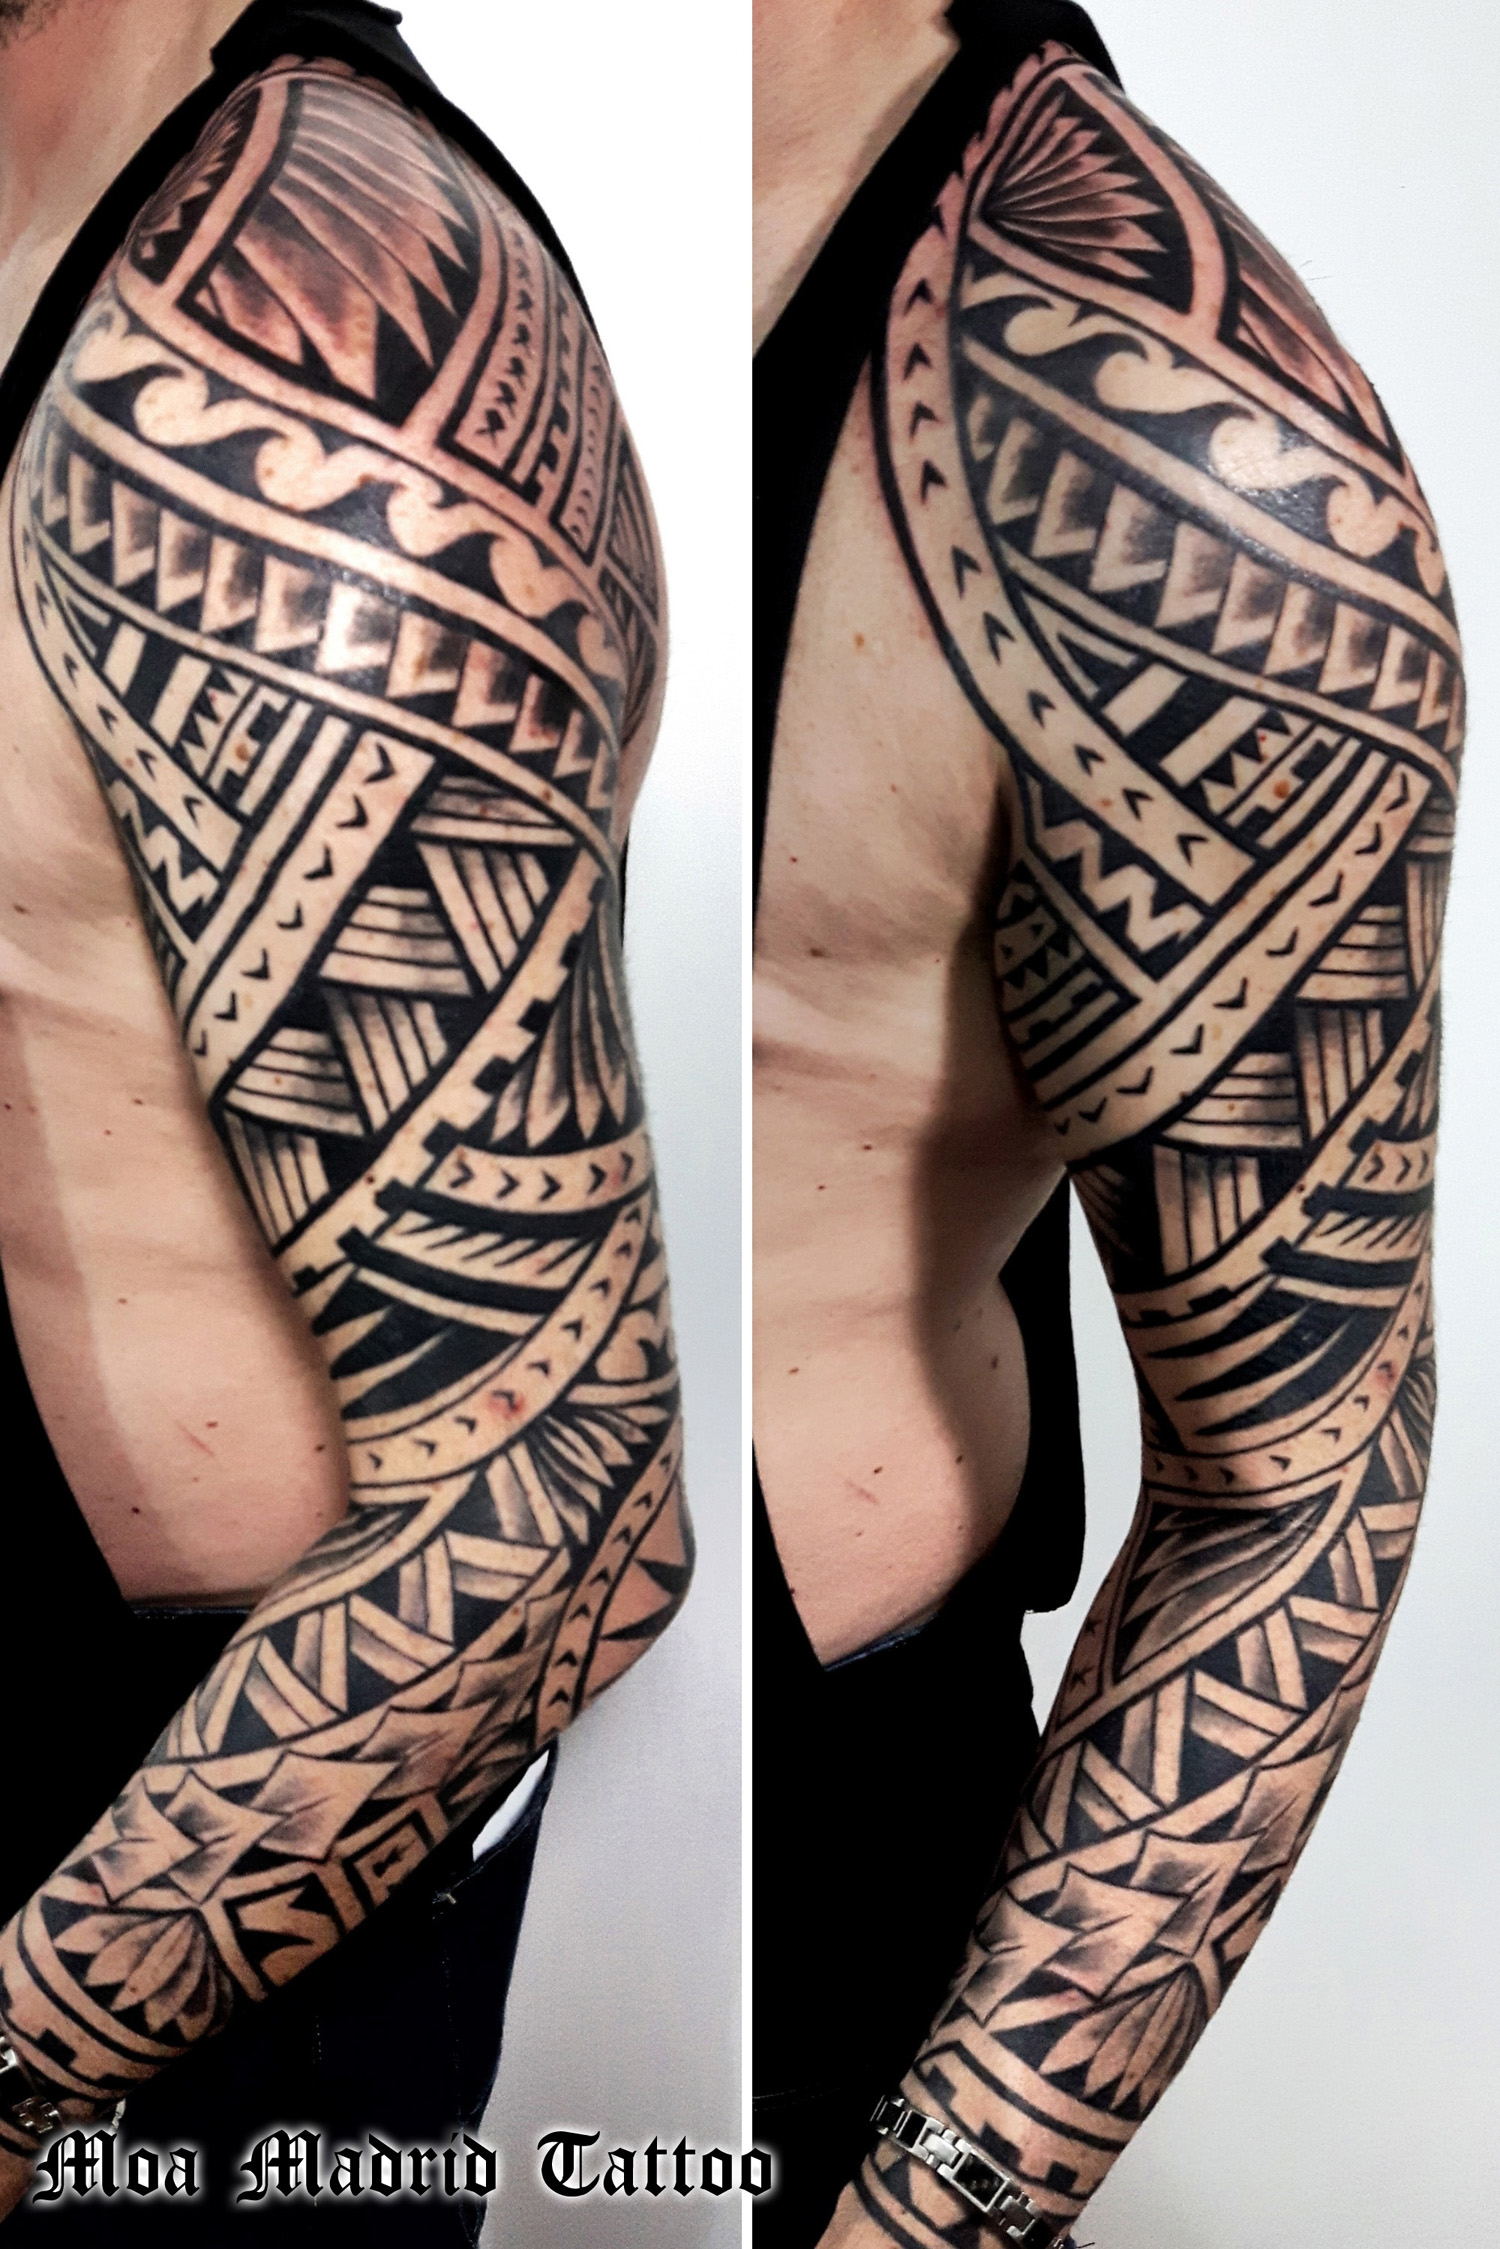 Brazo entero tatuado estilo maorí en Madrid | Moa Madrid Tattoo